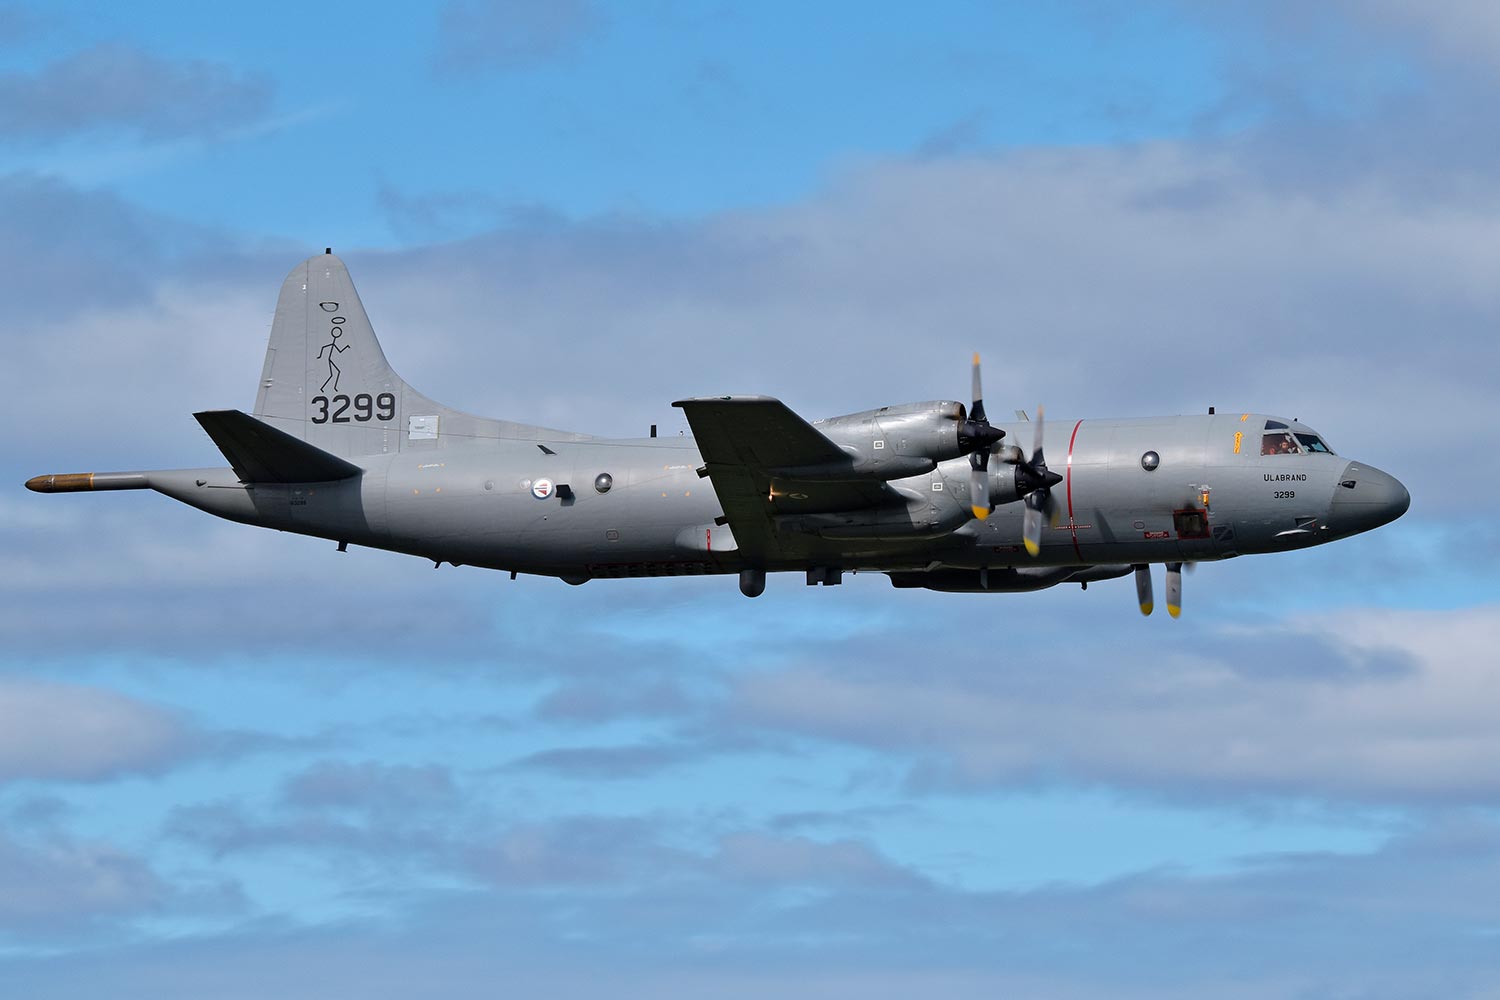 Argentyna kupiła od Norwegii cztery samoloty patrolowe P-3 Orion za 60 milionów dolarów.